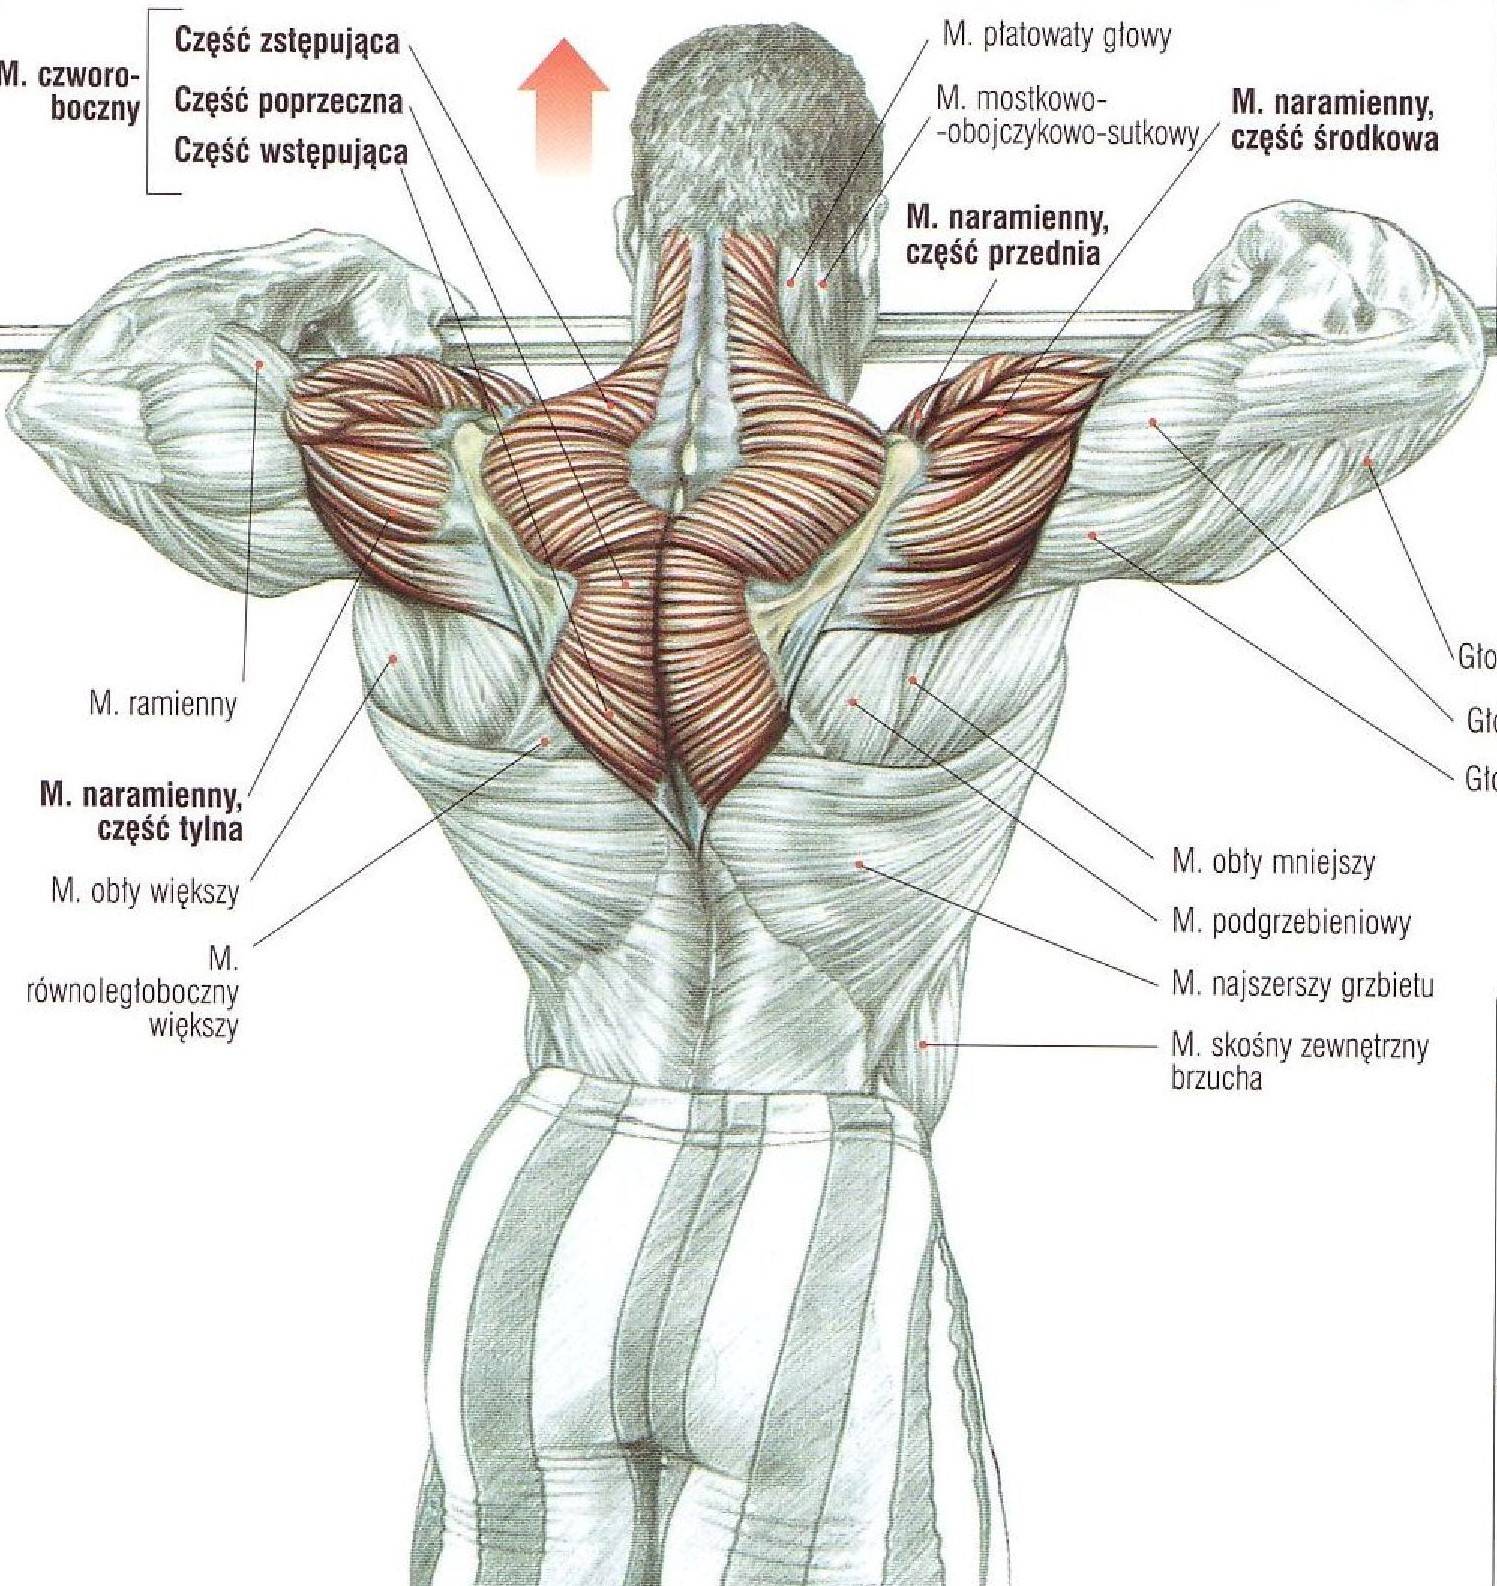 Упражнения на трапецию в тренажерном зале для мужчин. упражнения для трапециевидных мышц спины | здоровое питание